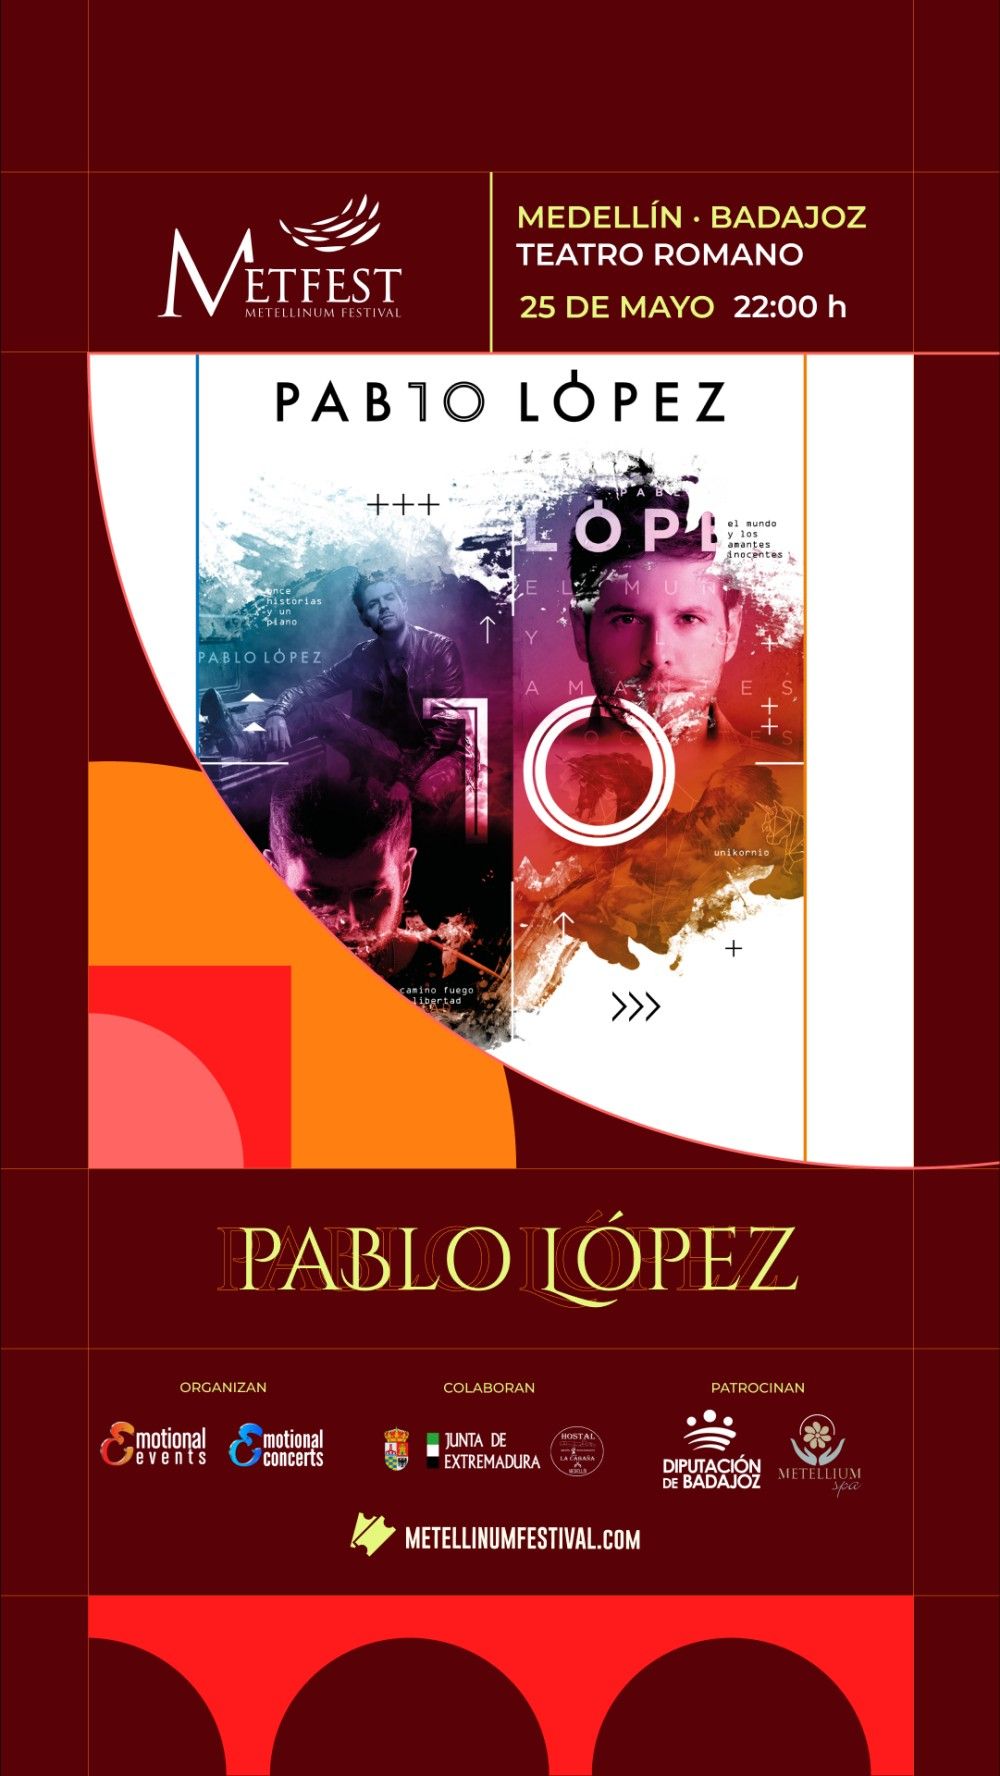 Pablo López: Conciertos, entradas y giras